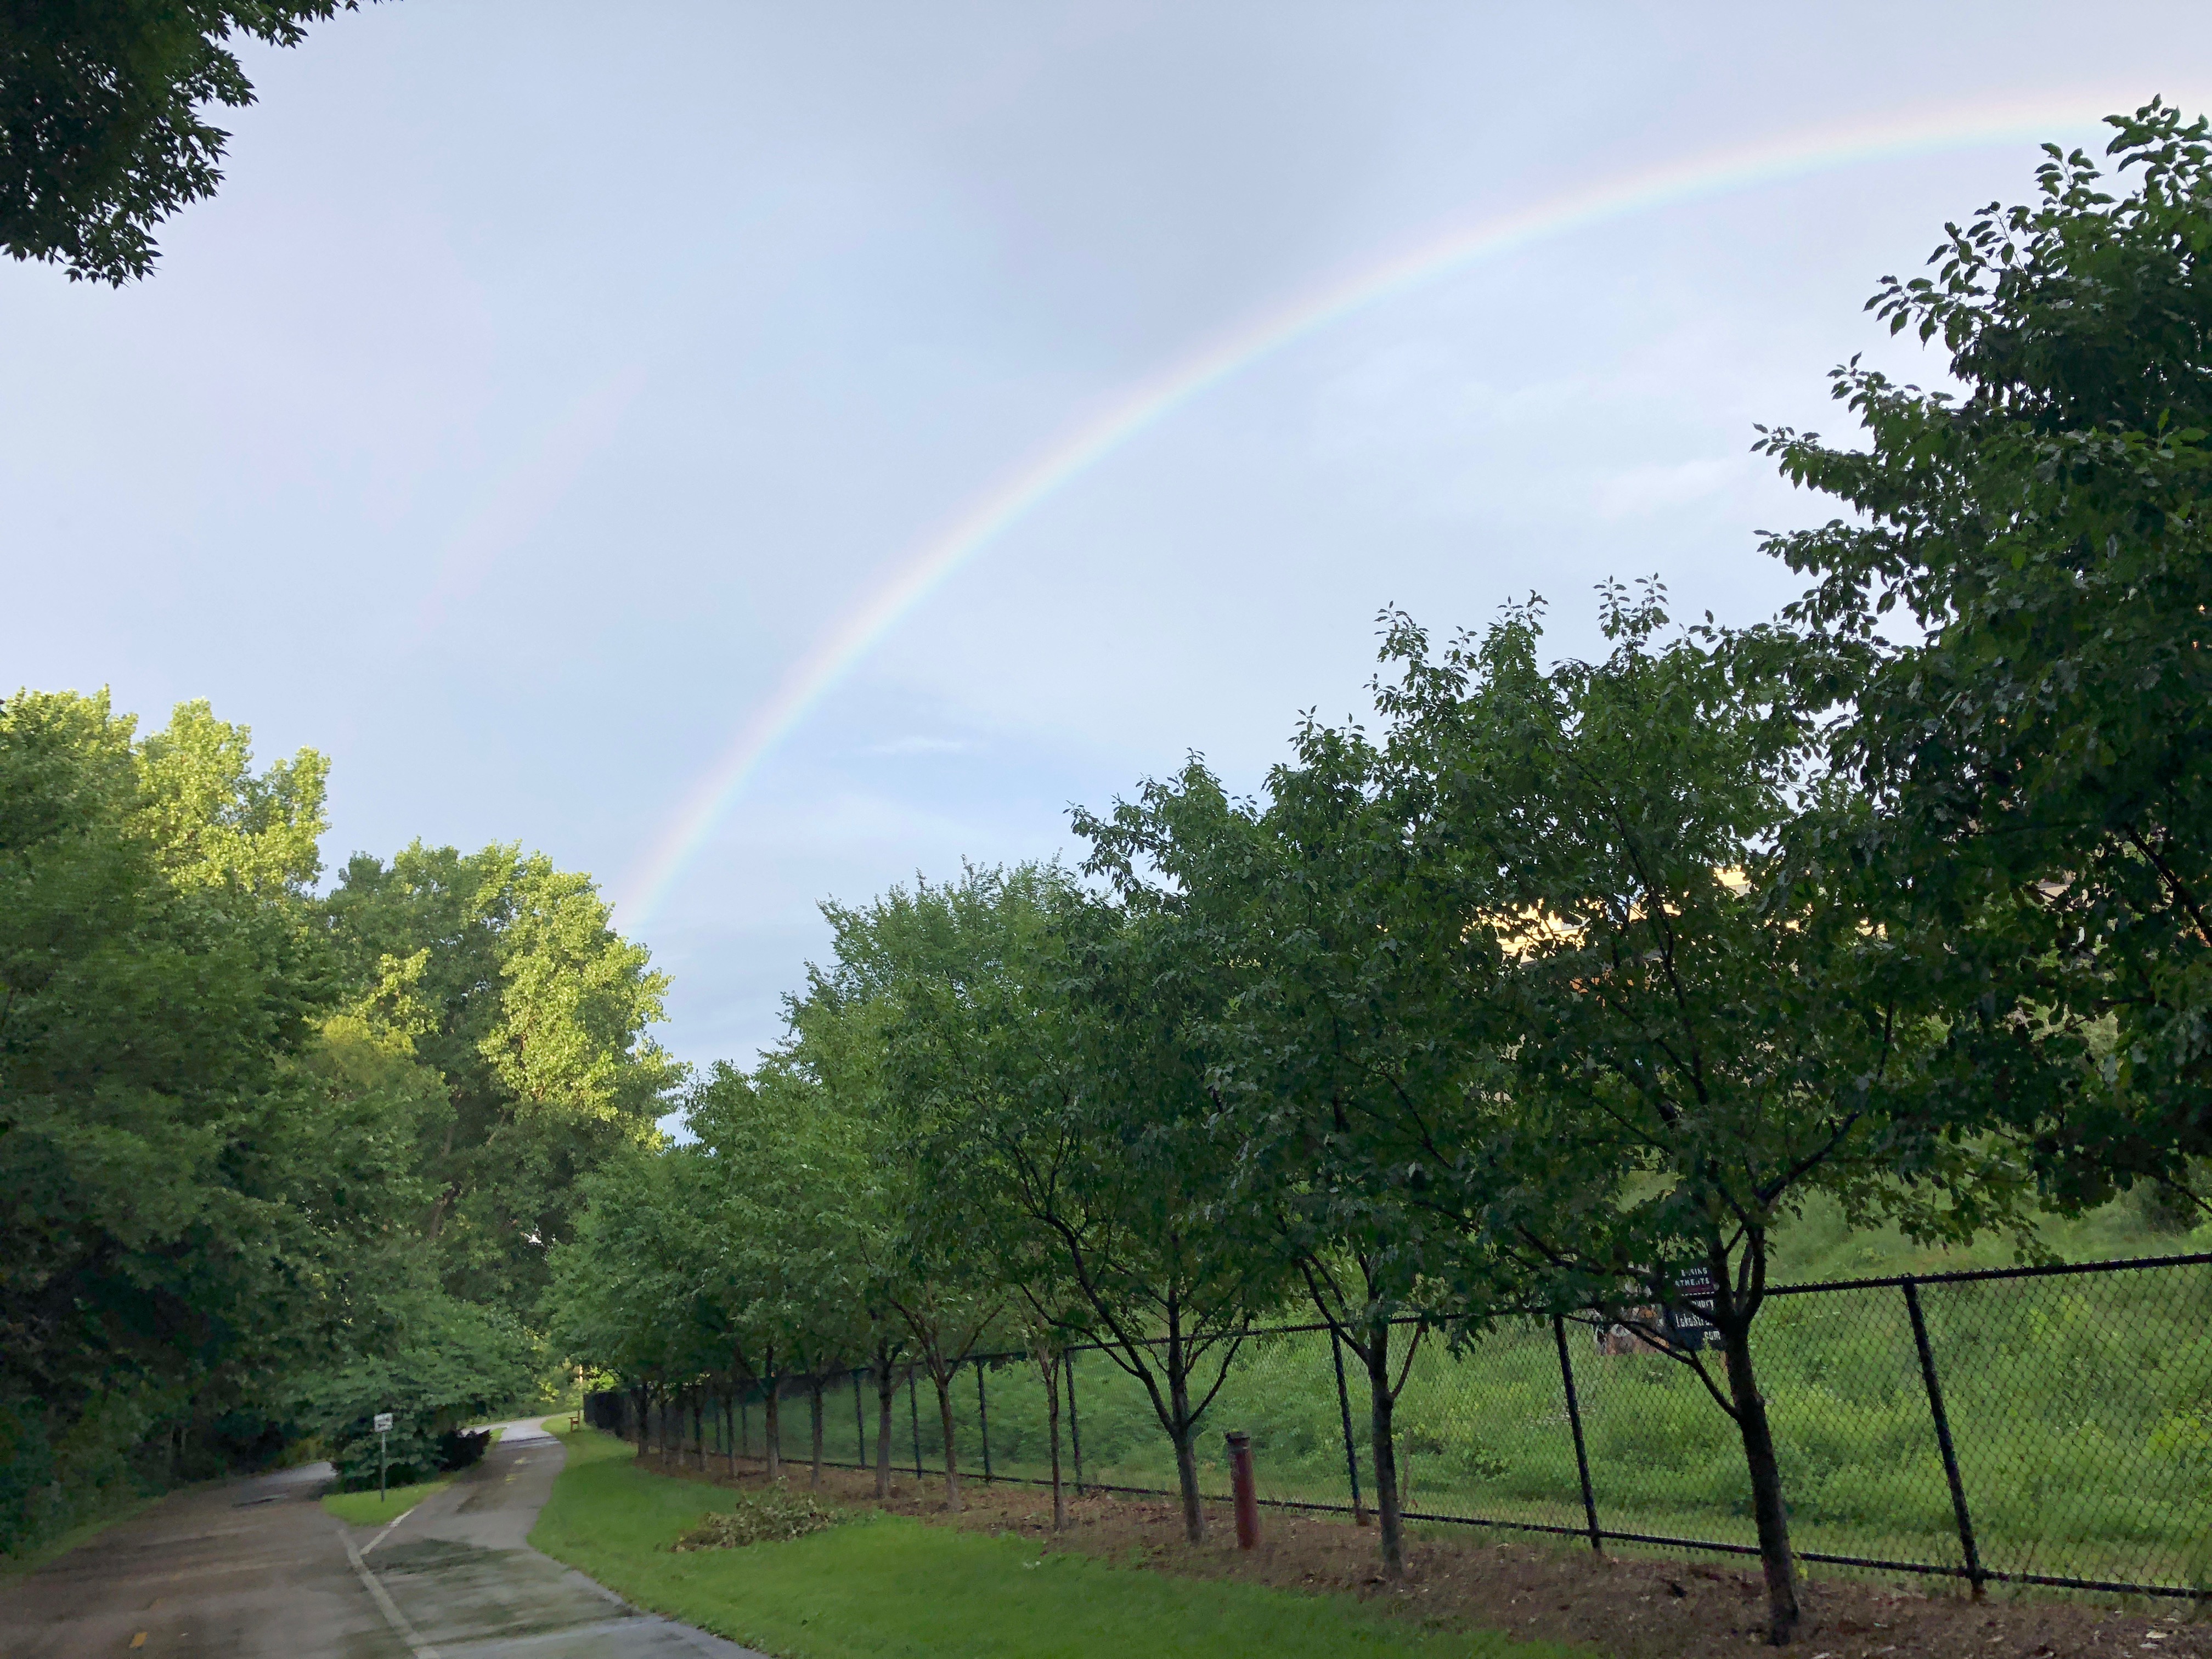 greenway rainbow summer 2018